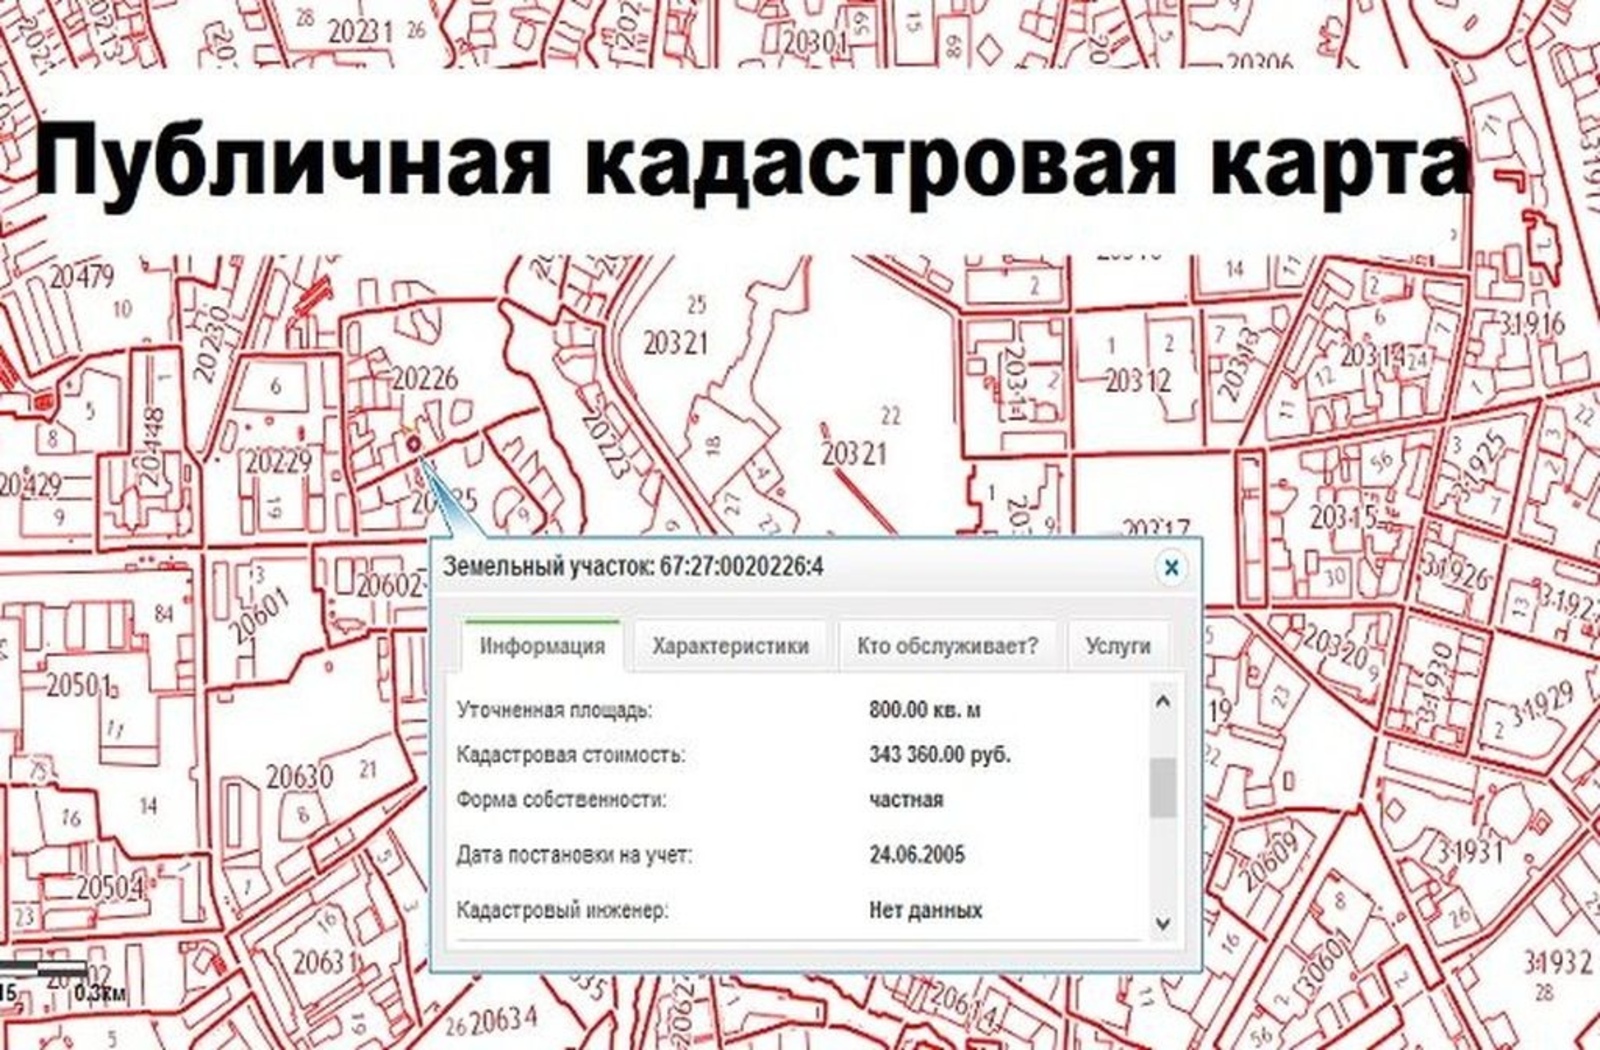 Кадастровая карта кемерово андреевка